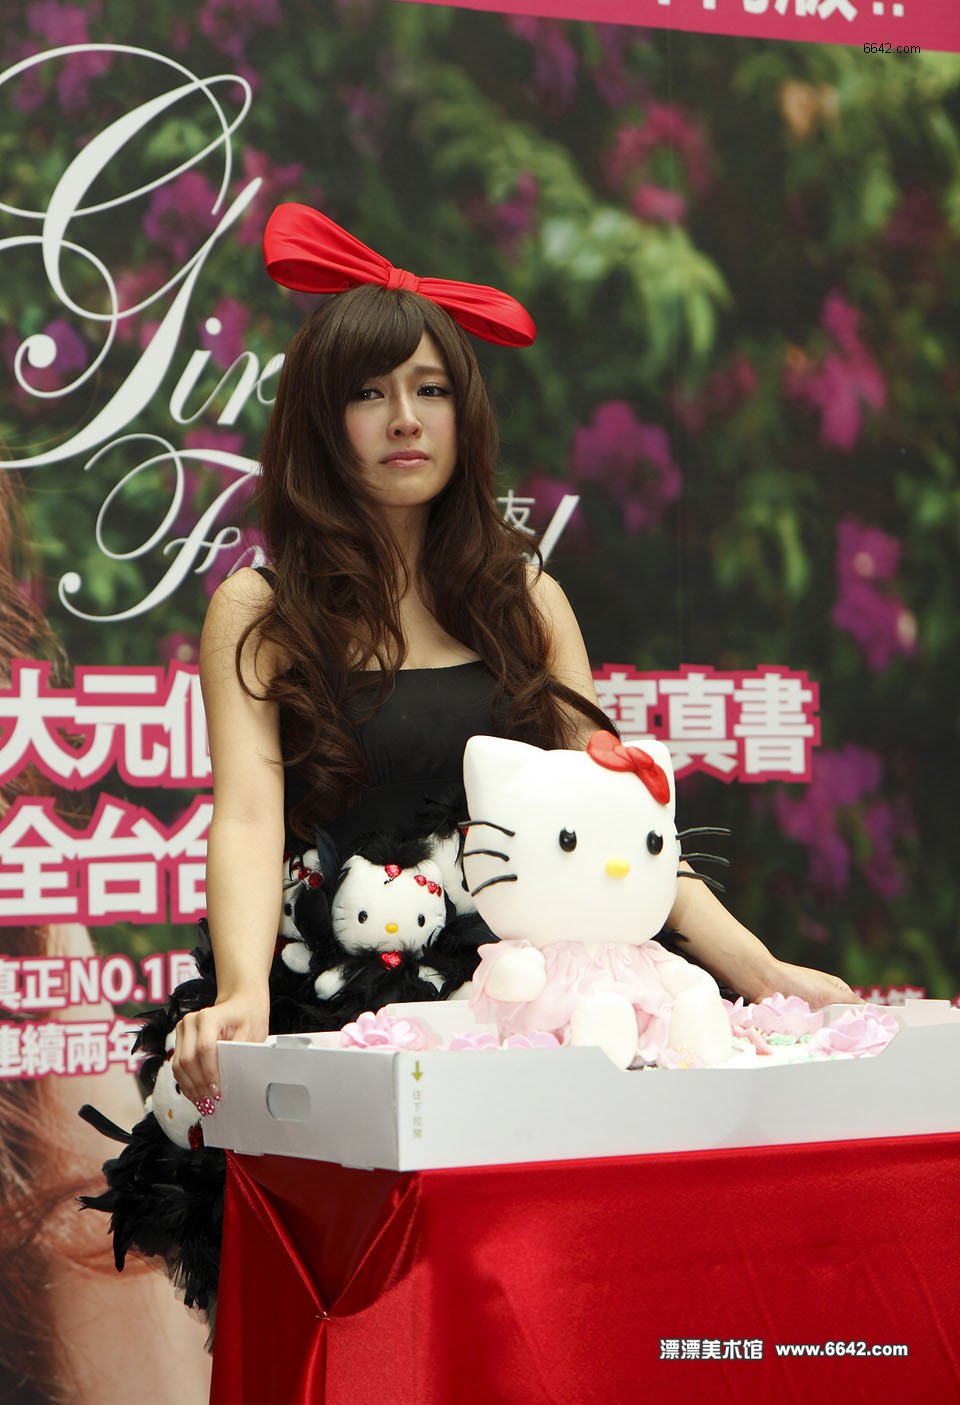 Lin Yingzhen (DaYuan) Chinese lady so cute